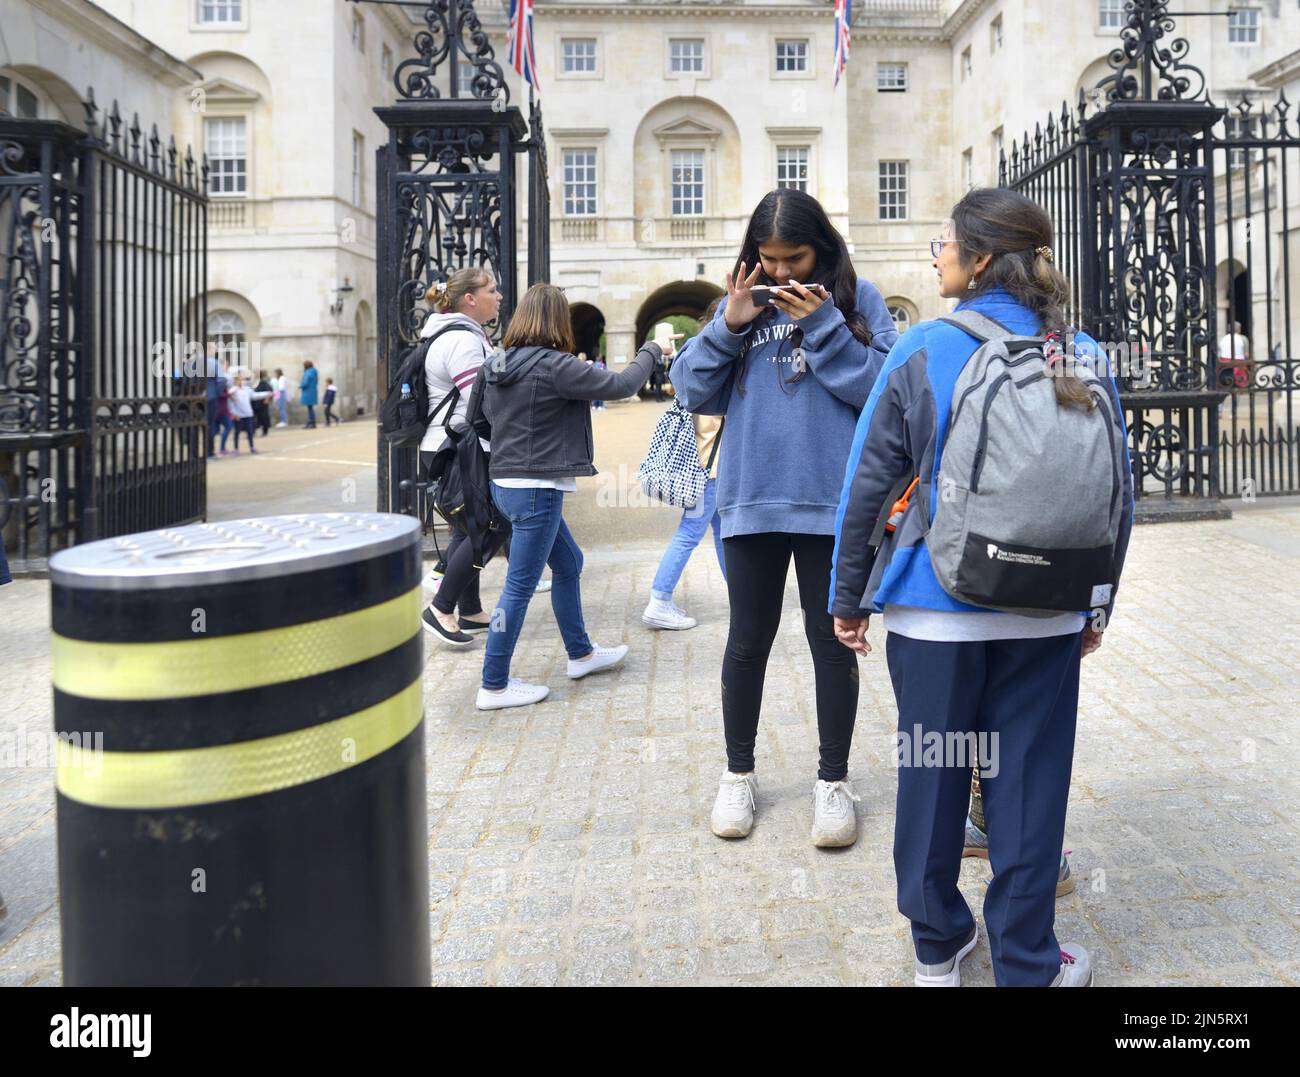 Londres, Inglaterra, Reino Unido. Chica mirando su teléfono móvil fuera de Horse Guards Parade en Whitehall Foto de stock